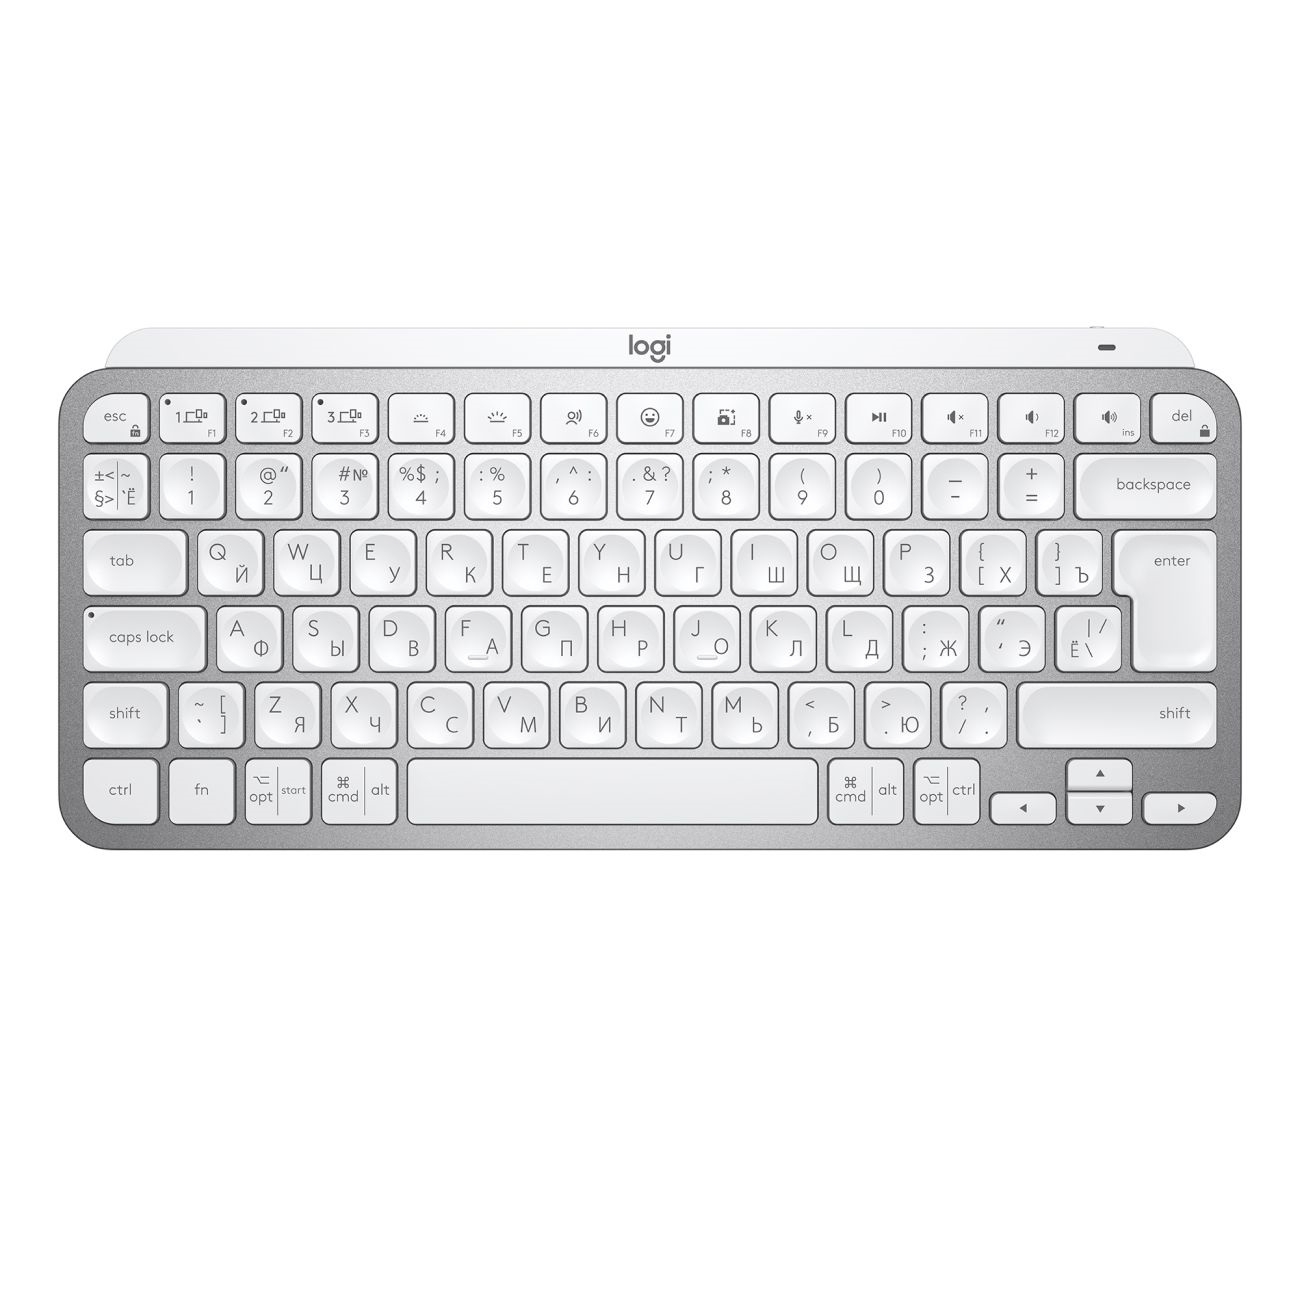 Клавиатура Logitech MX Keys MINI Pale Grey (920-010502) 4pcs mx 50 mx50 чип тонера для sharp mx 4101n mx 5001n mx 4100n mx 5000 mx4101n mx5001n mx4100n mx5000 сброс картриджа копира